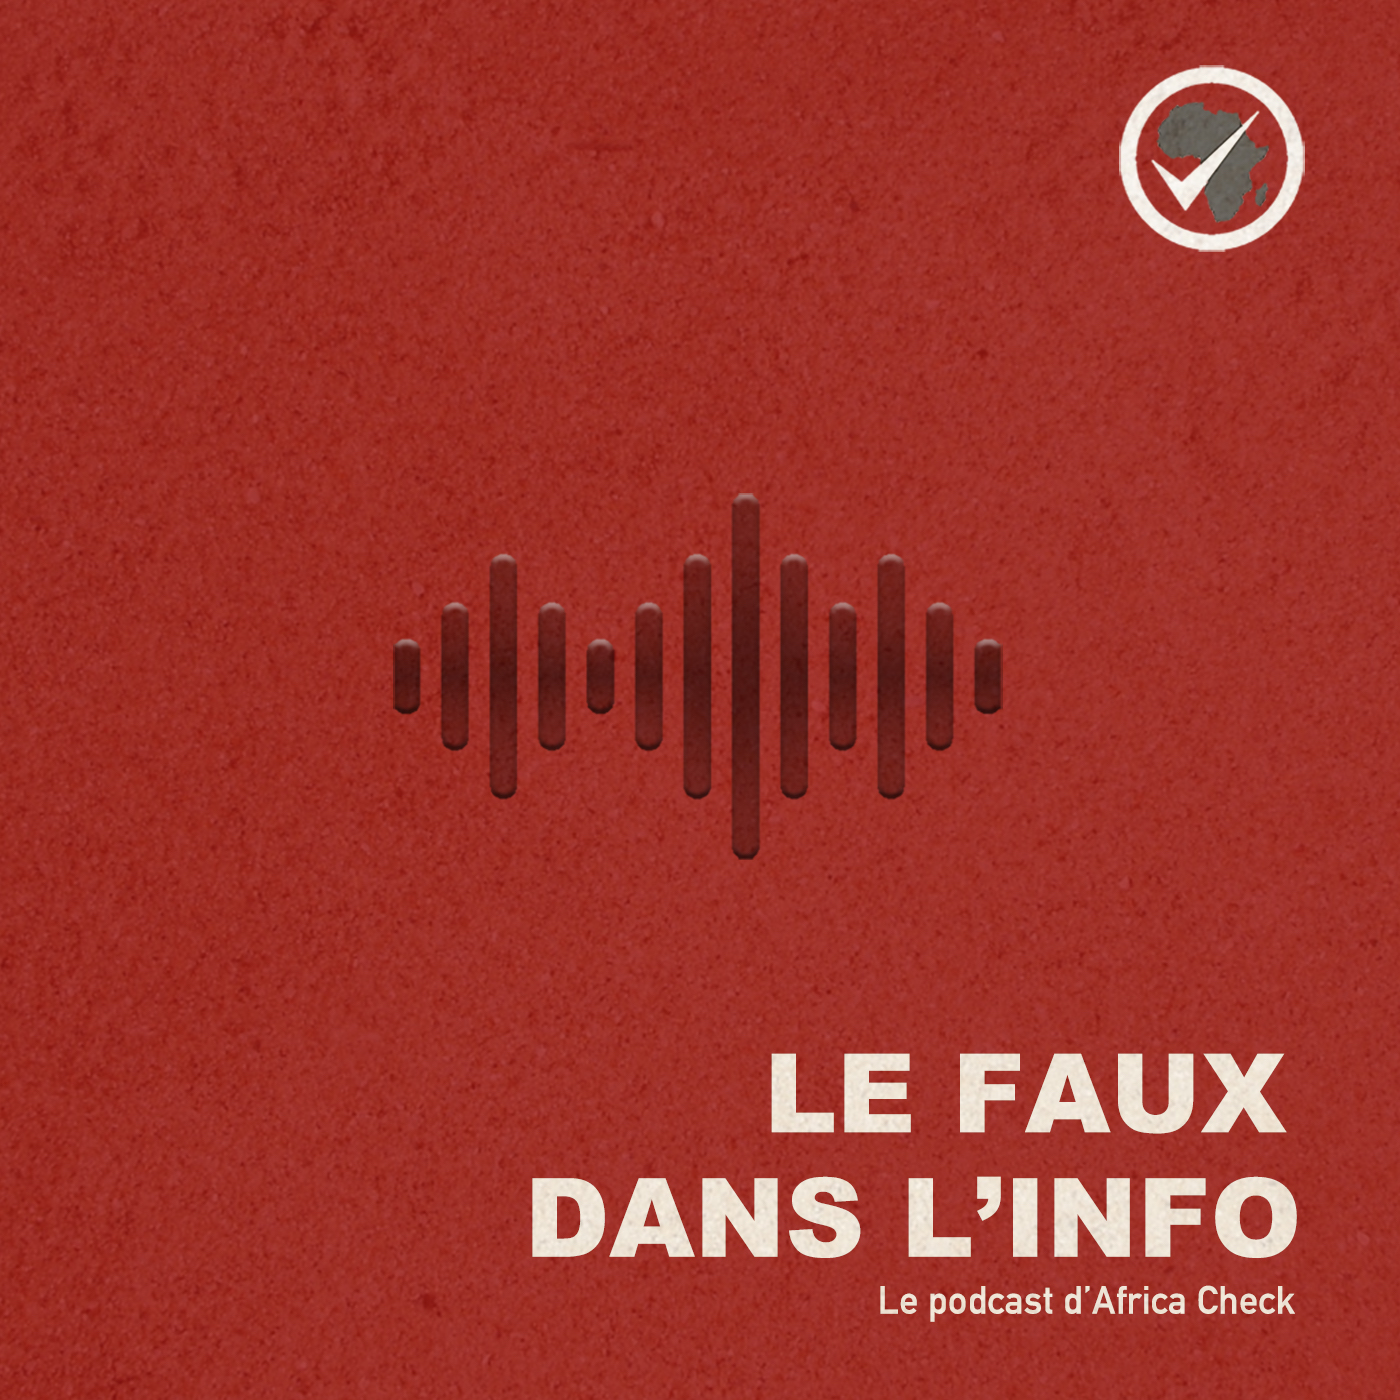 Artwork for podcast Le faux dans l'info